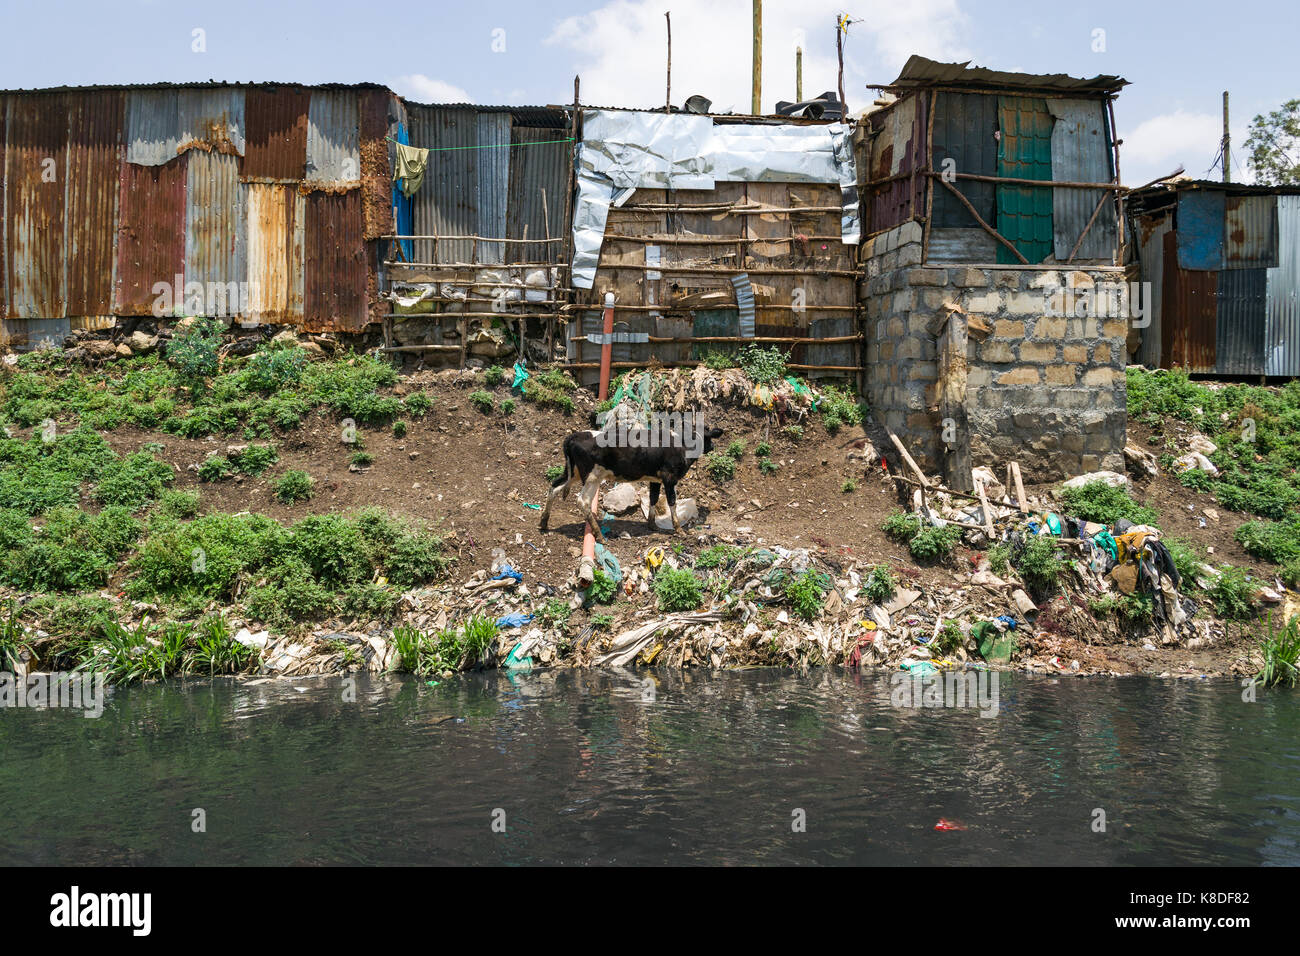 Slum Hütten Linie Ngong Fluss, der mit Müll verunreinigt ist, Kunststoff Abfall und Müll, eine Kuh gesehen werden kann zu Fuß durch den Fluss auf der Suche nach Essen, N Stockfoto